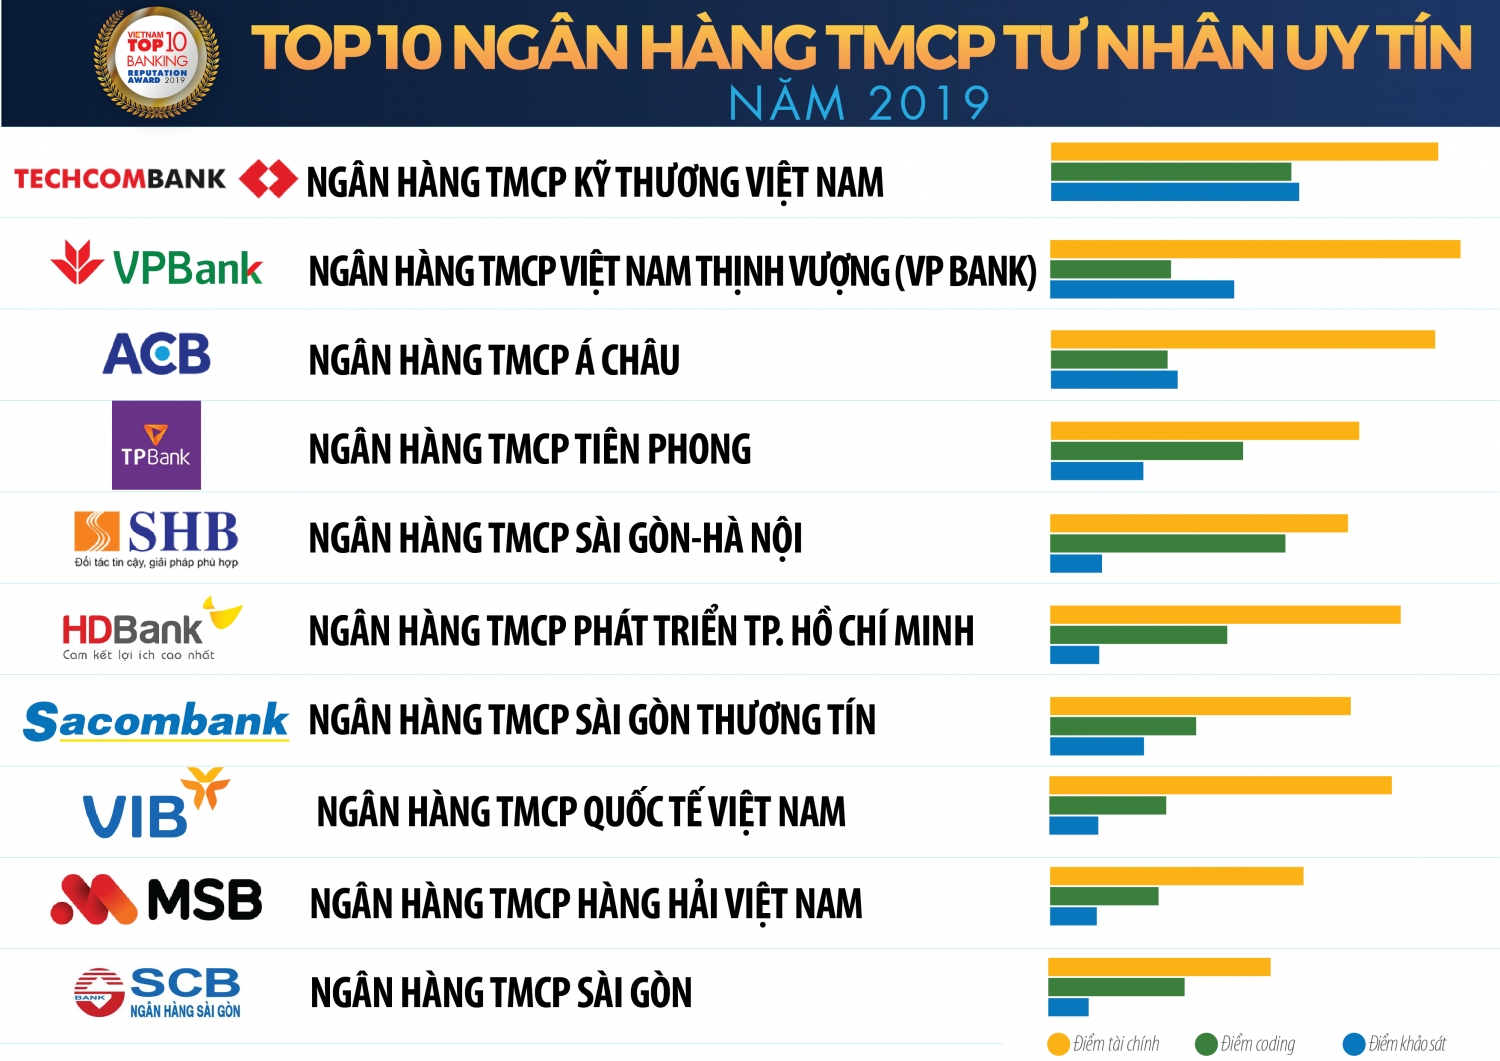 vietcombank vietinbank techcombank giu top 3 ngan hang thuong mai viet nam uy tin nam 2019